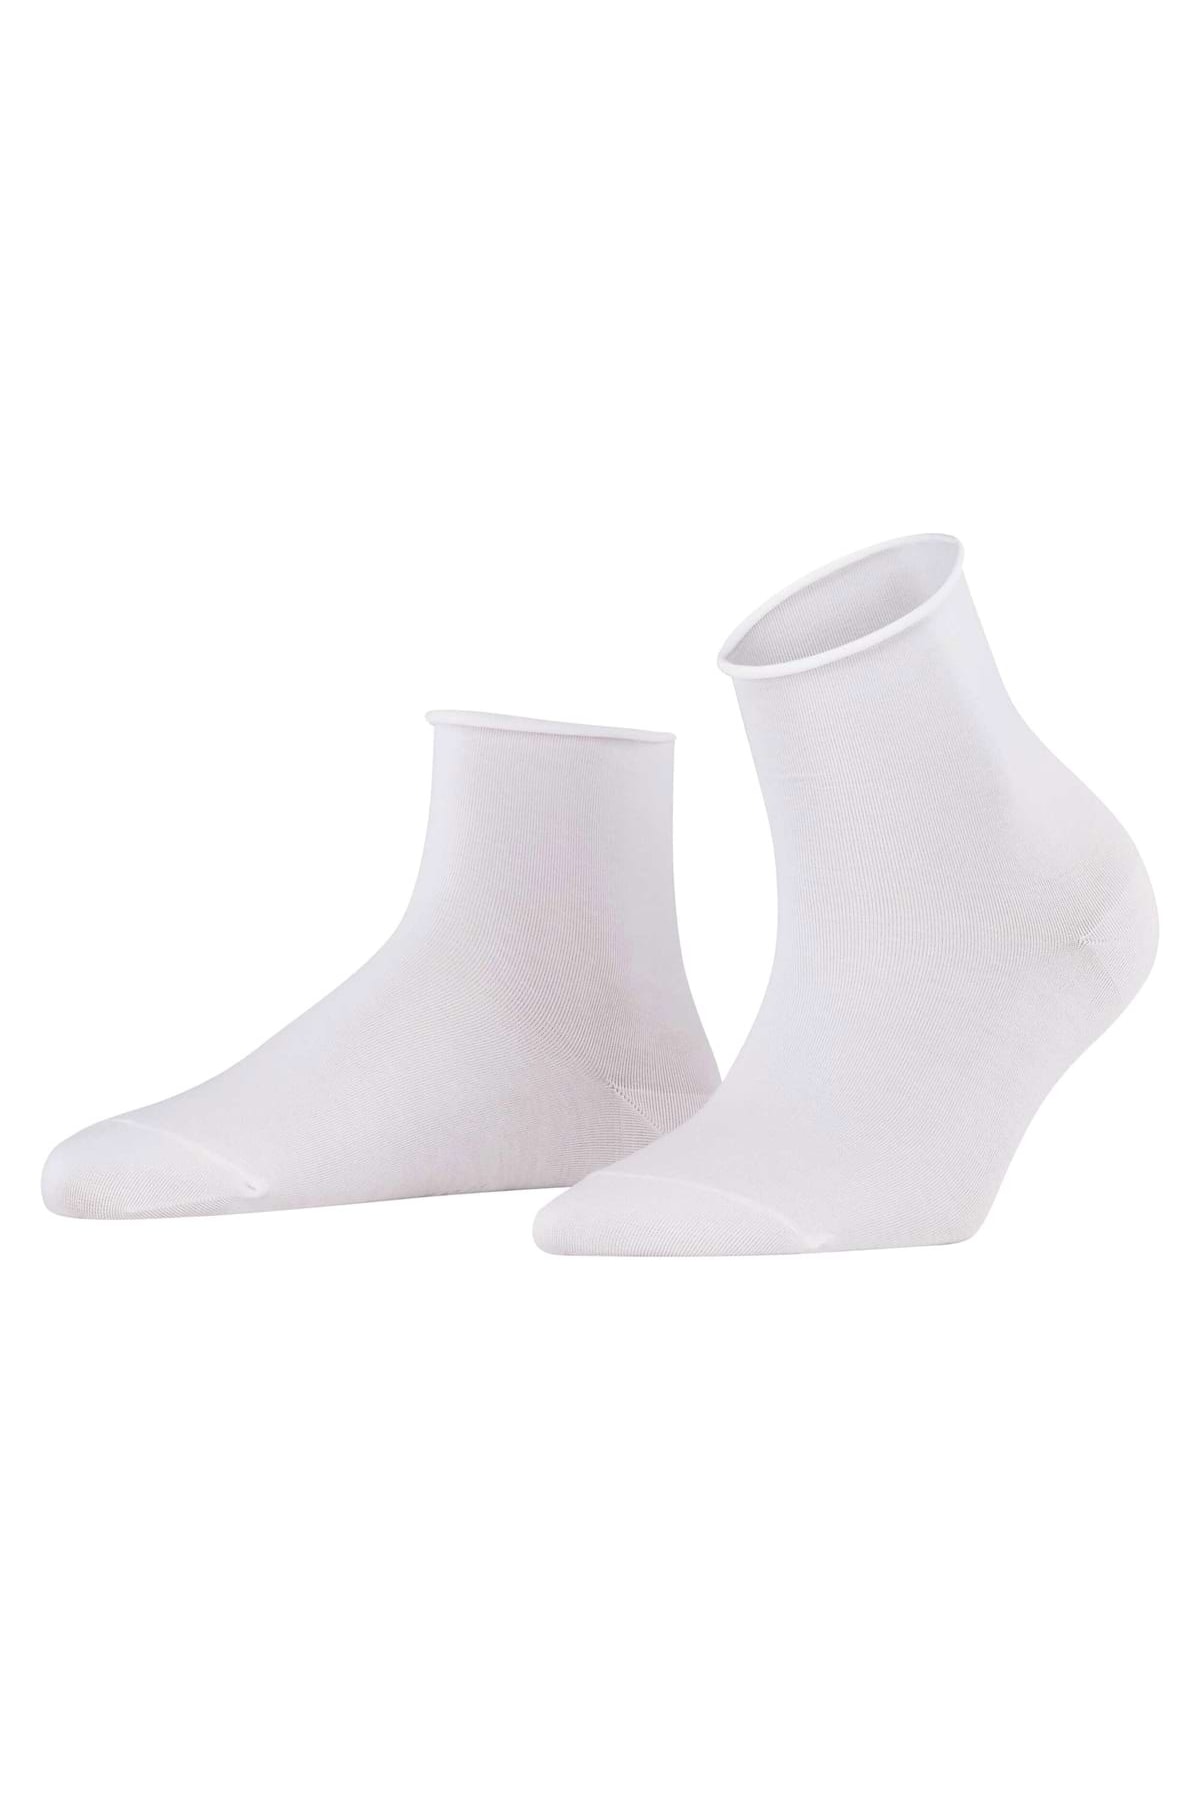 FALKE Socken Weiß 1 Stück Fast ausverkauft